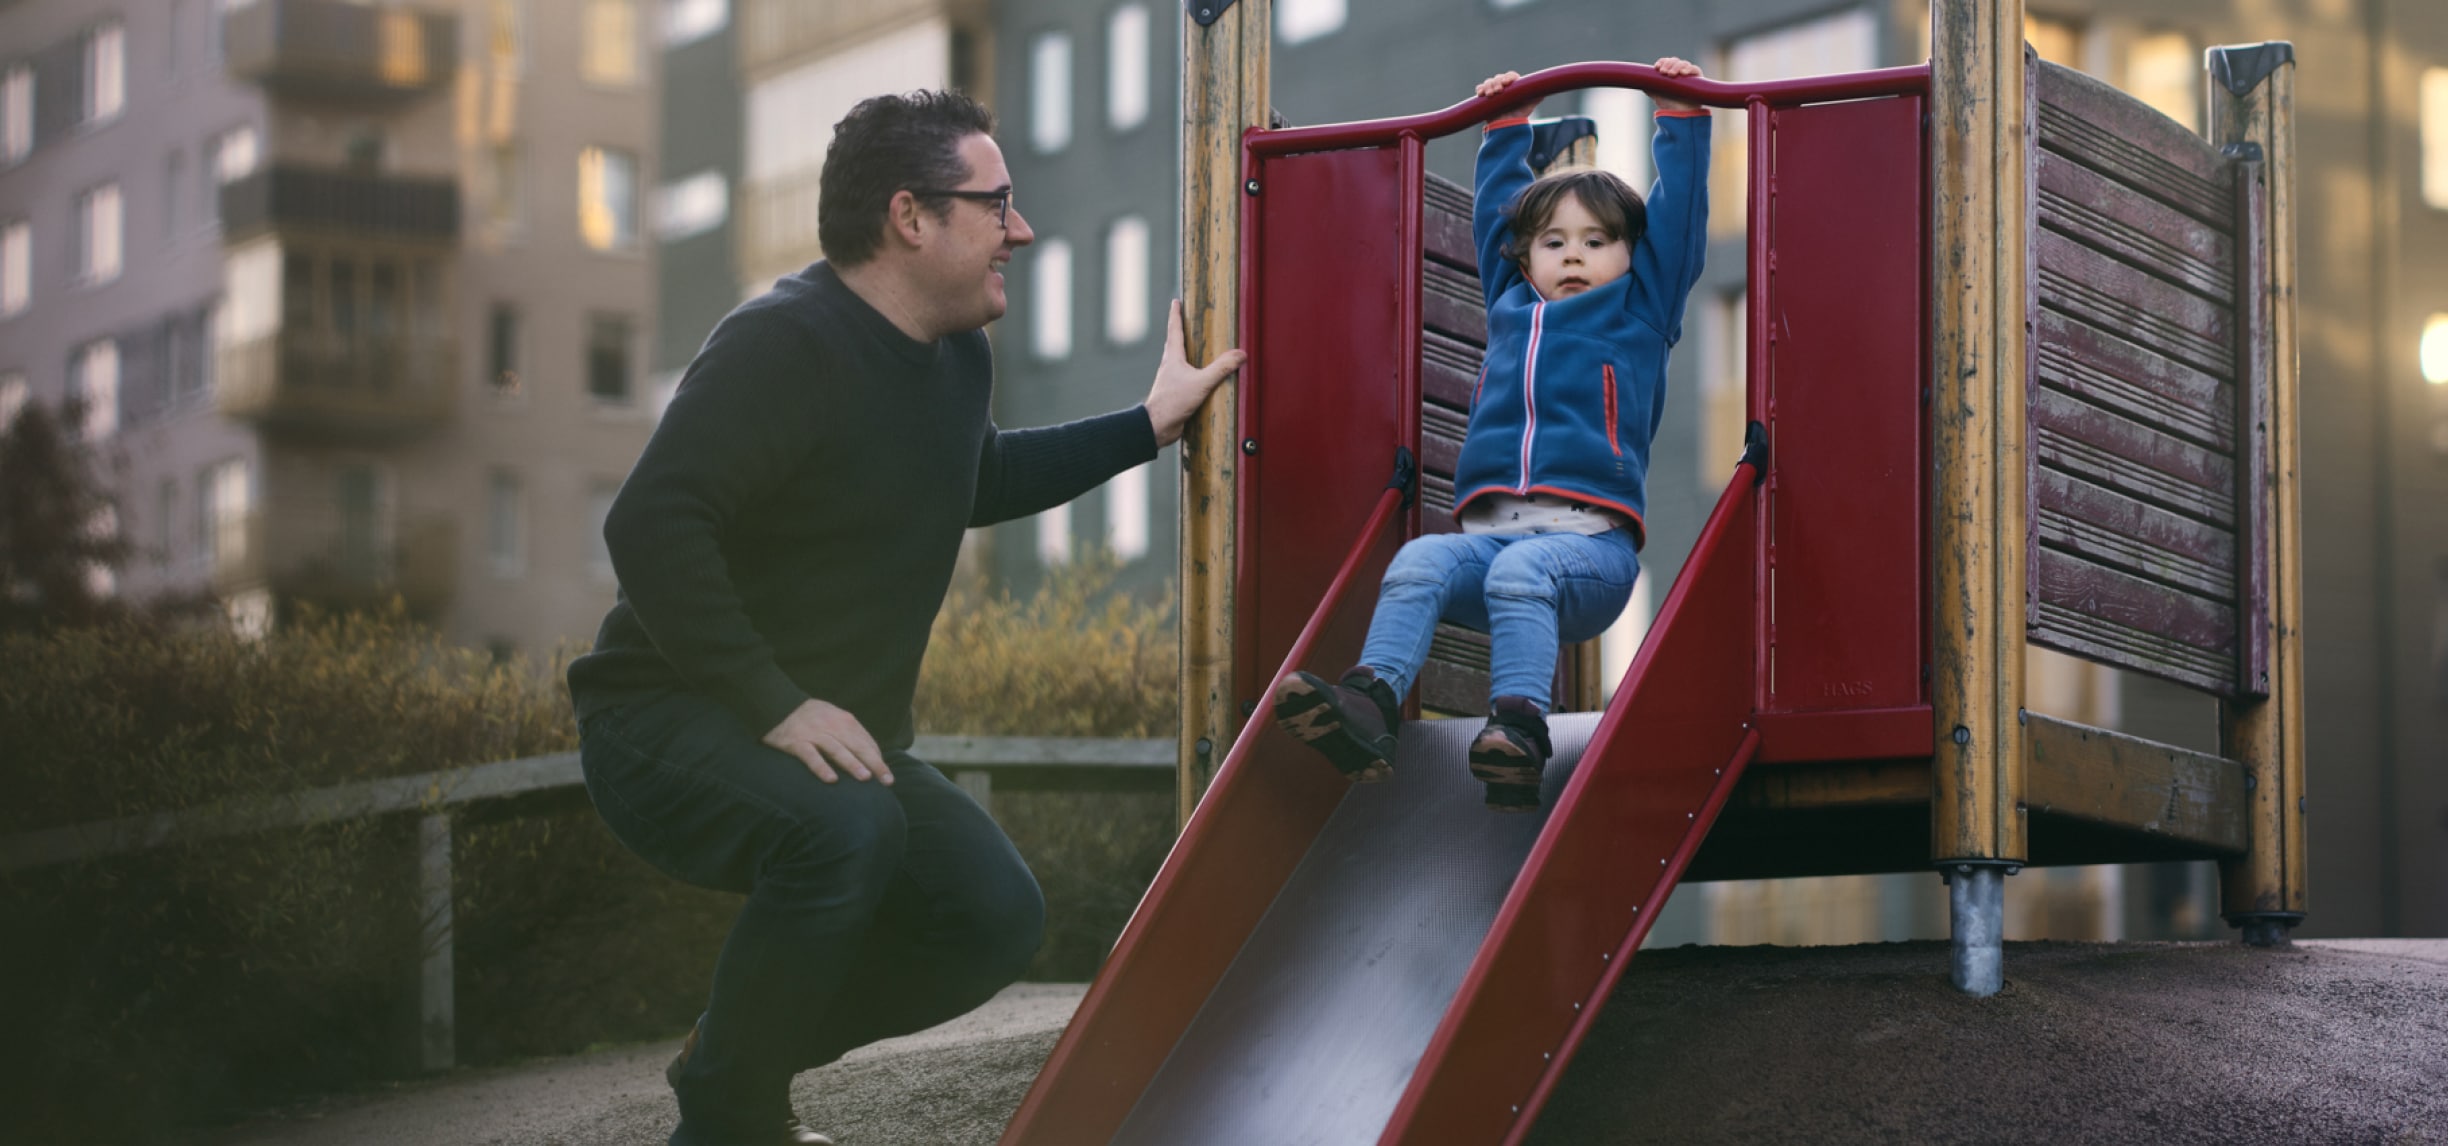 Un hombre sonriendo a un niño pequeño que baja por un tobogán en un parque infantil.